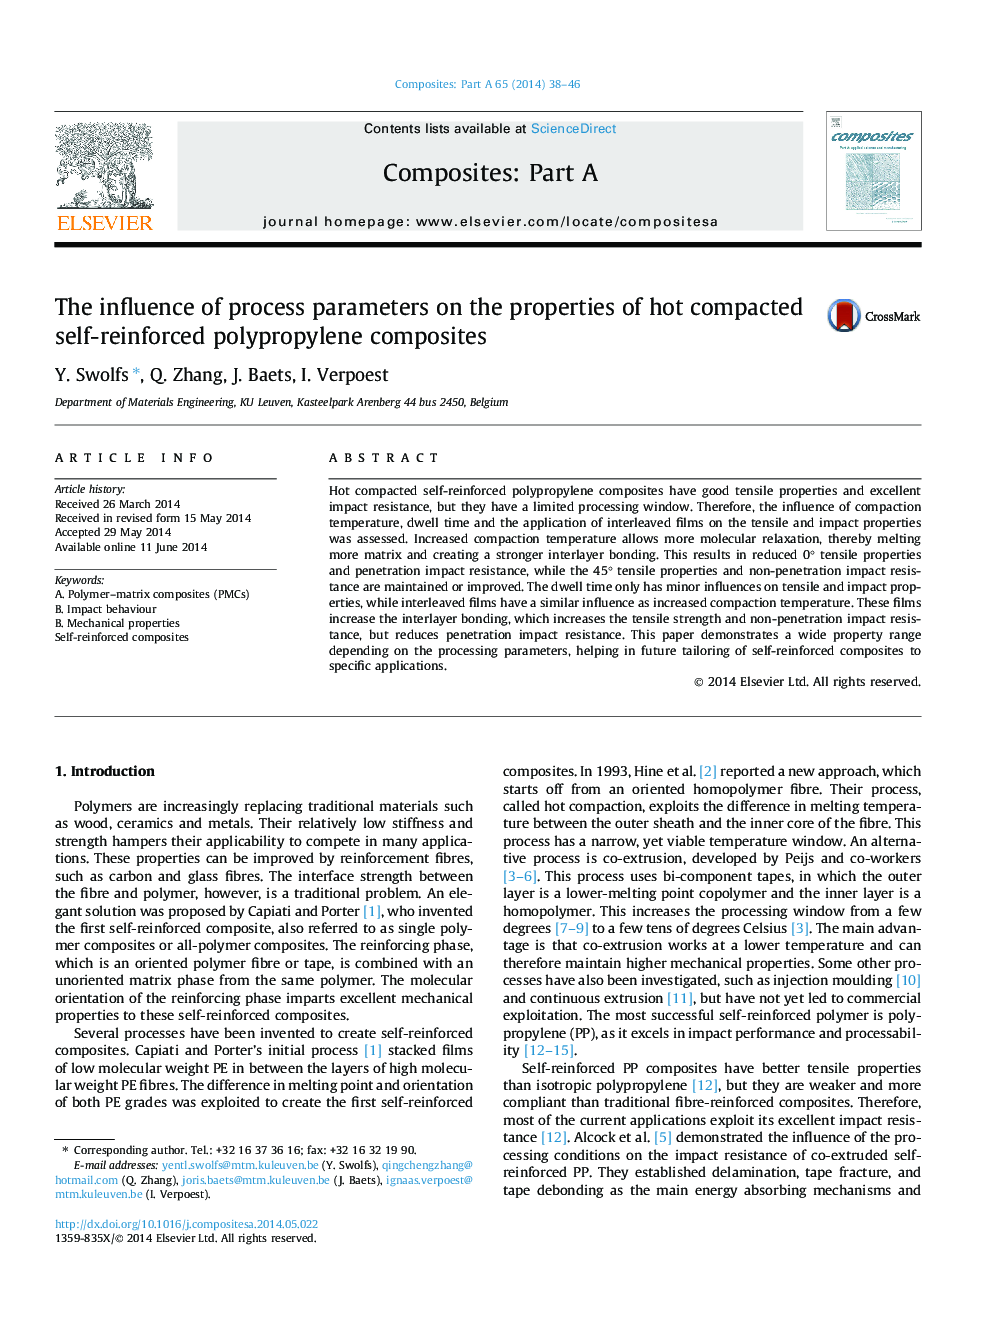 تأثیر پارامترهای فرآیند بر خواص کامپوزیت های پلی پروپیلن تقویت شده فشرده داغ 